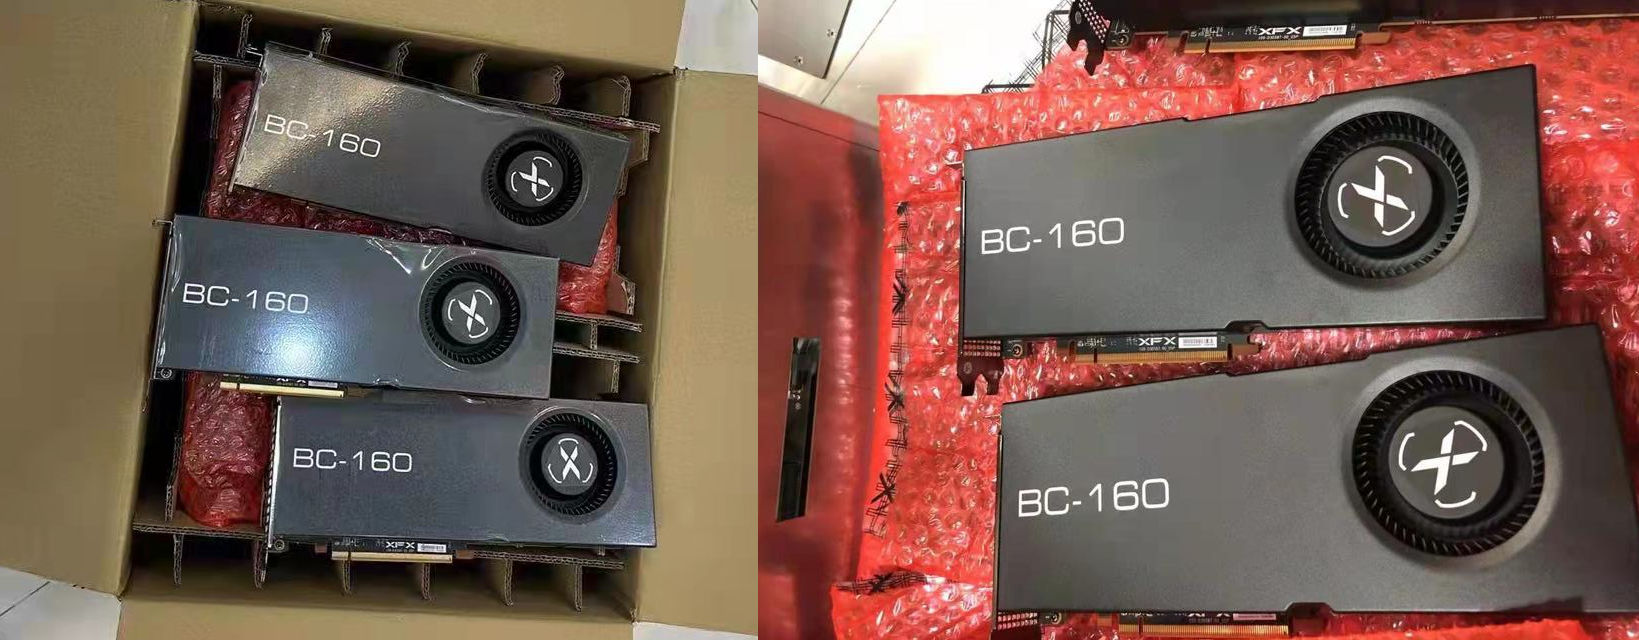 بطاقة AMD XFX BC-160 للتعدين بذاكرة HBM2 سعة 8 جيجا بايت بسعر 2000$